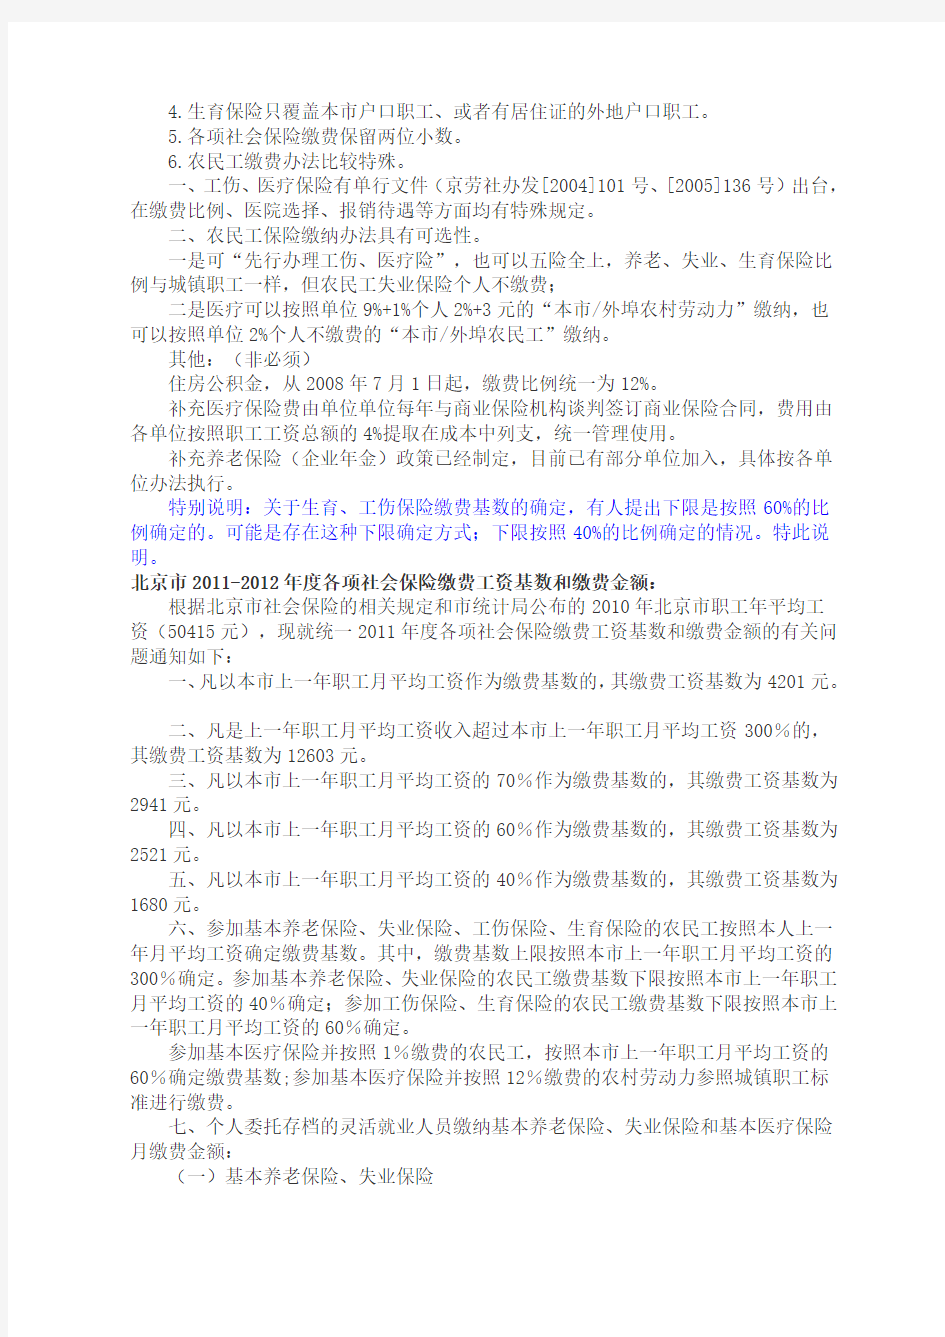 2012年北京市社保缴费比例及缴费基数及基本说明